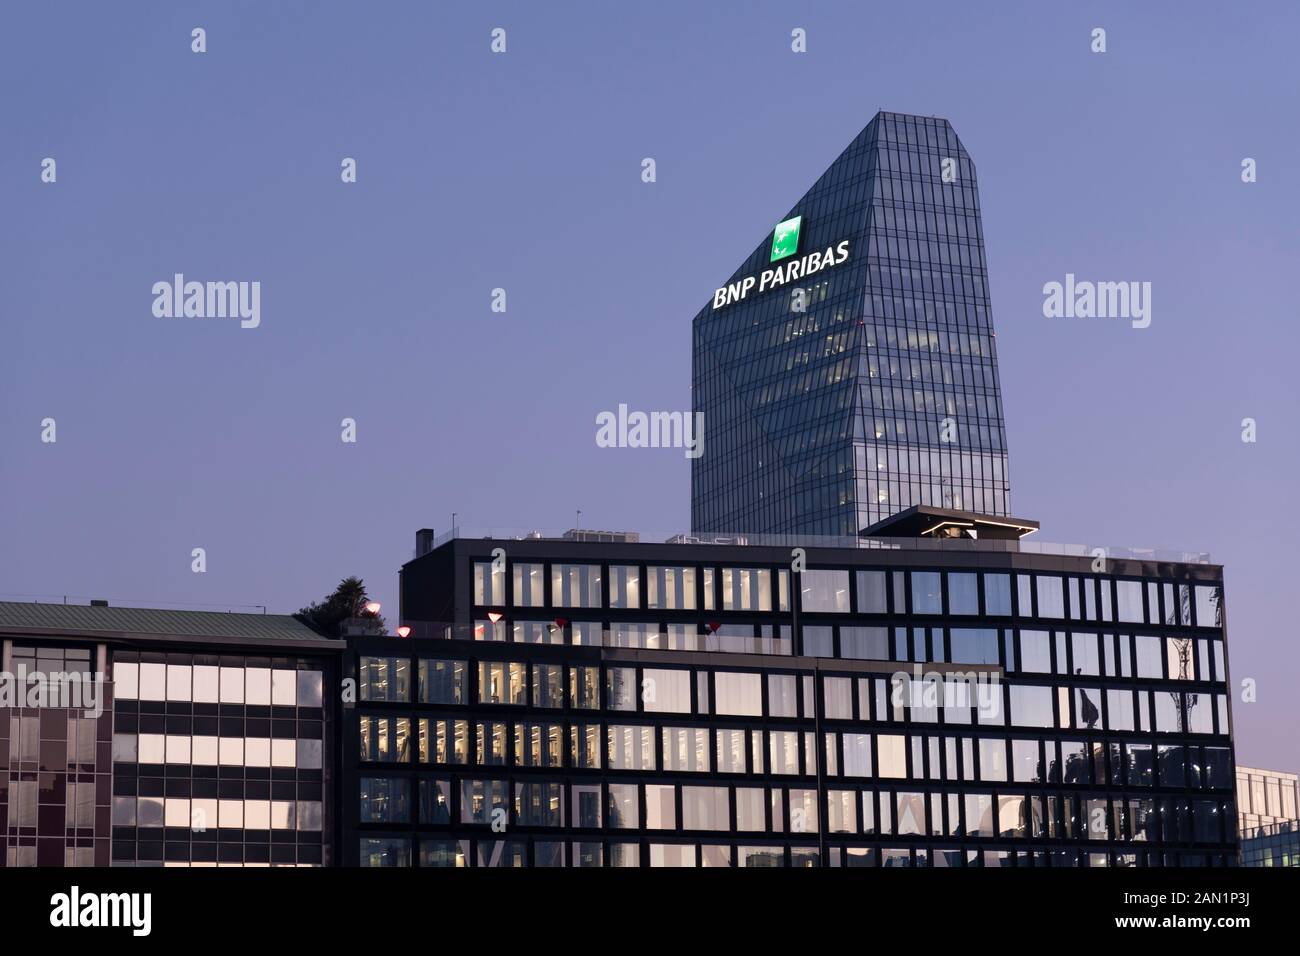 Edificio de vidrio, sede del banco francés BNP Paribas con el logotipo cartel iluminado al atardecer. Milán, Italia. Foto de stock